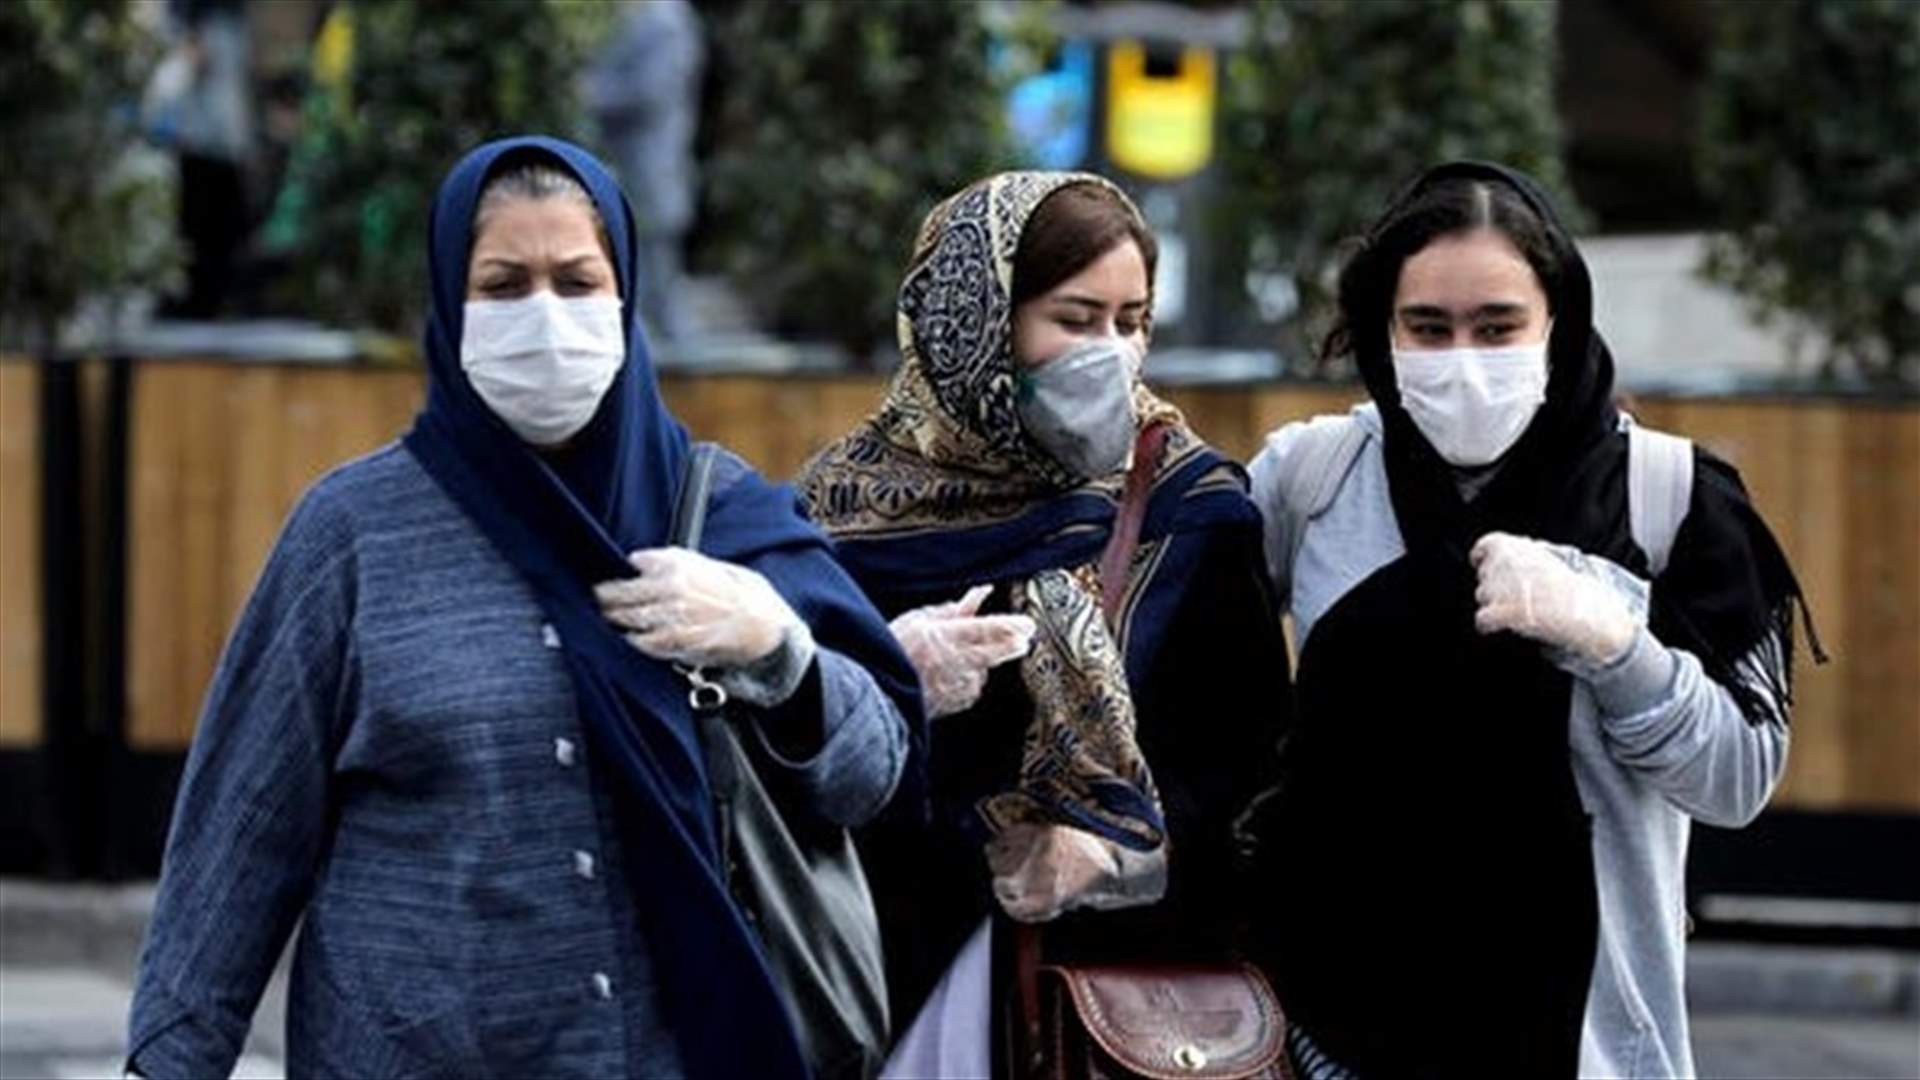 حصيلة قياسية جديدة... إيران تعلن وفاة 200 شخص جراء كوفيد-19 في 24 ساعة